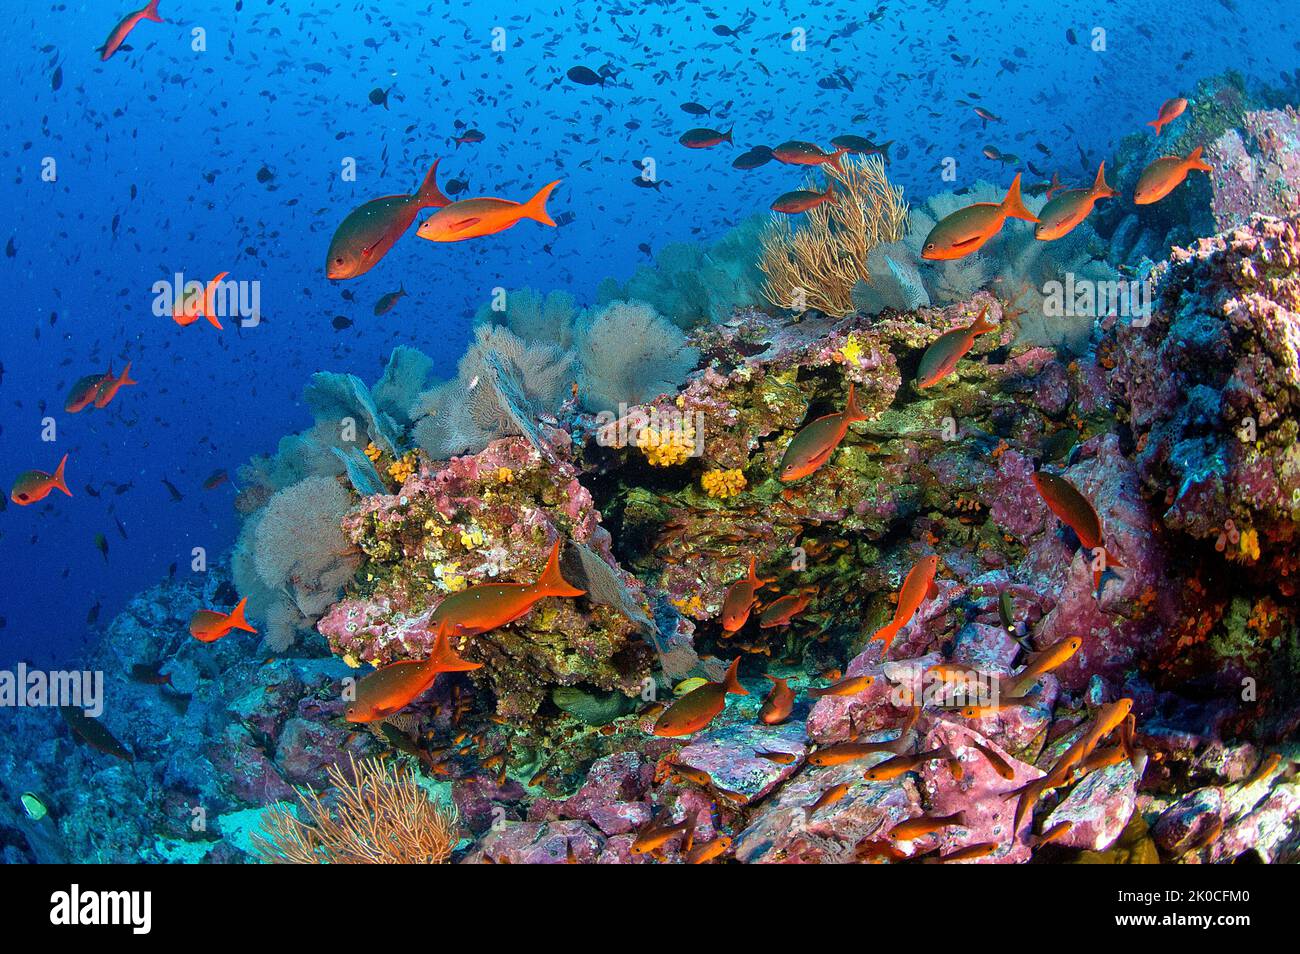 Creolefish del Pacífico (Paranthias colonus) en un arrecife de coral, isla de Malpelo, sitio declarado Patrimonio de la Humanidad por la UNESCO, Colombia Foto de stock